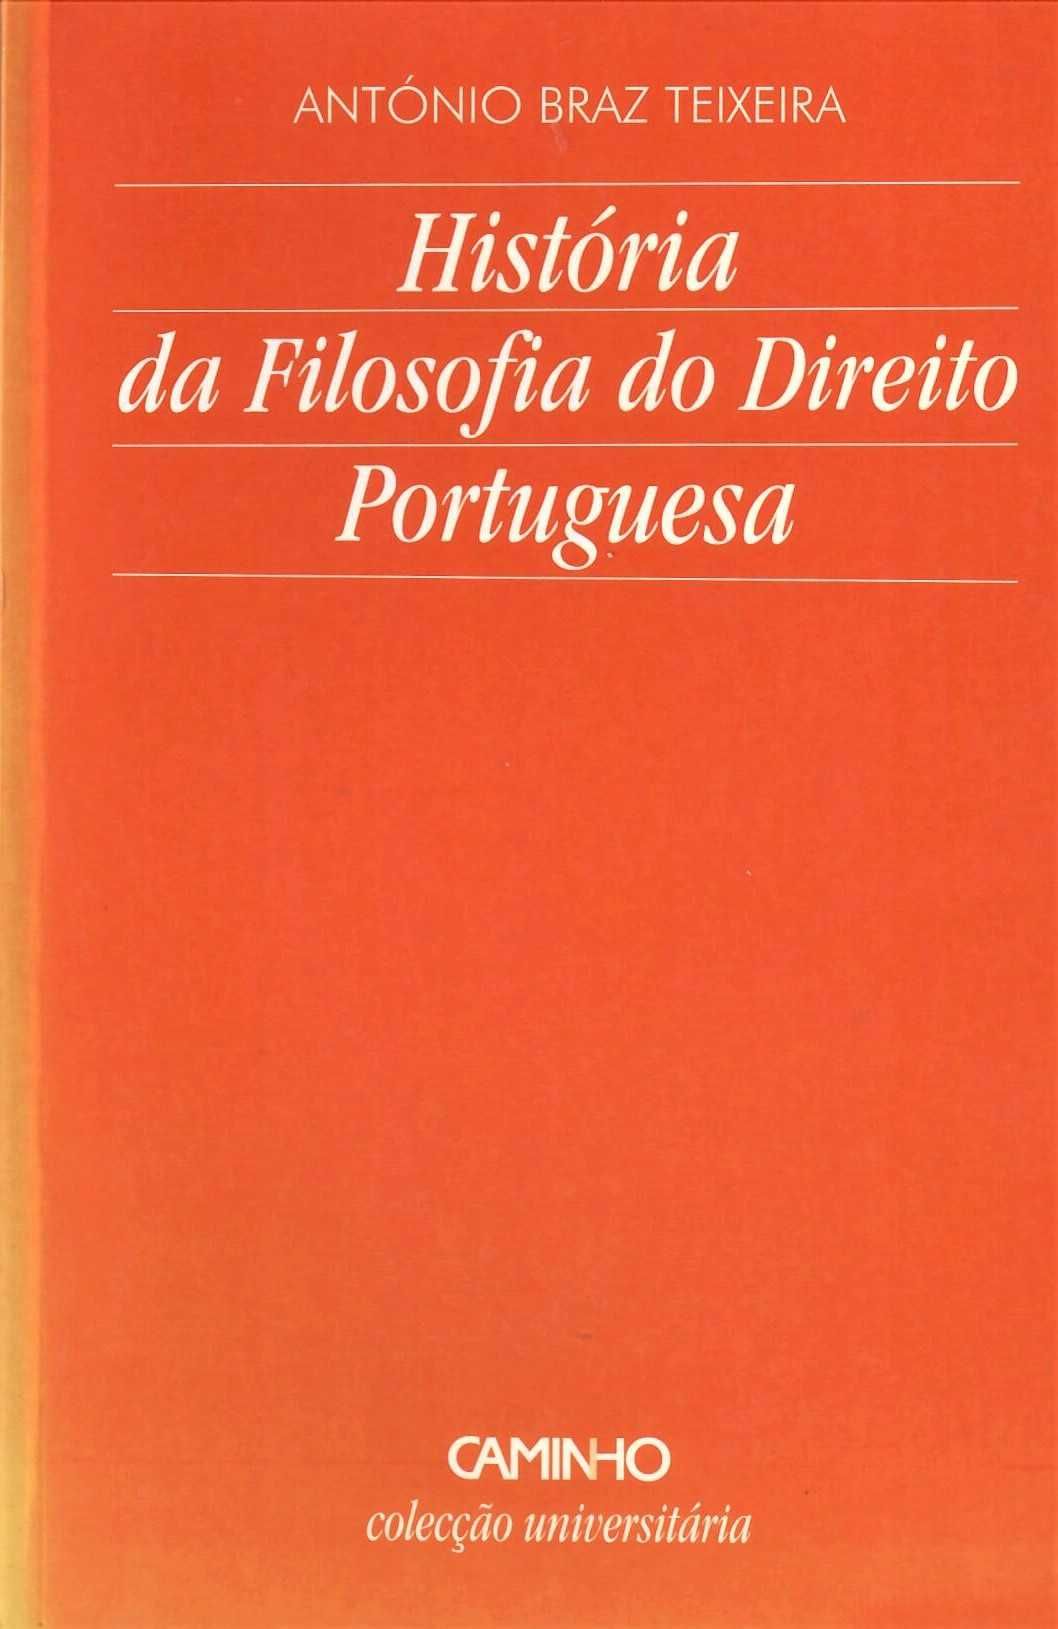 António Braz Teixeira «História da Filosofia do Direito Portuguesa»